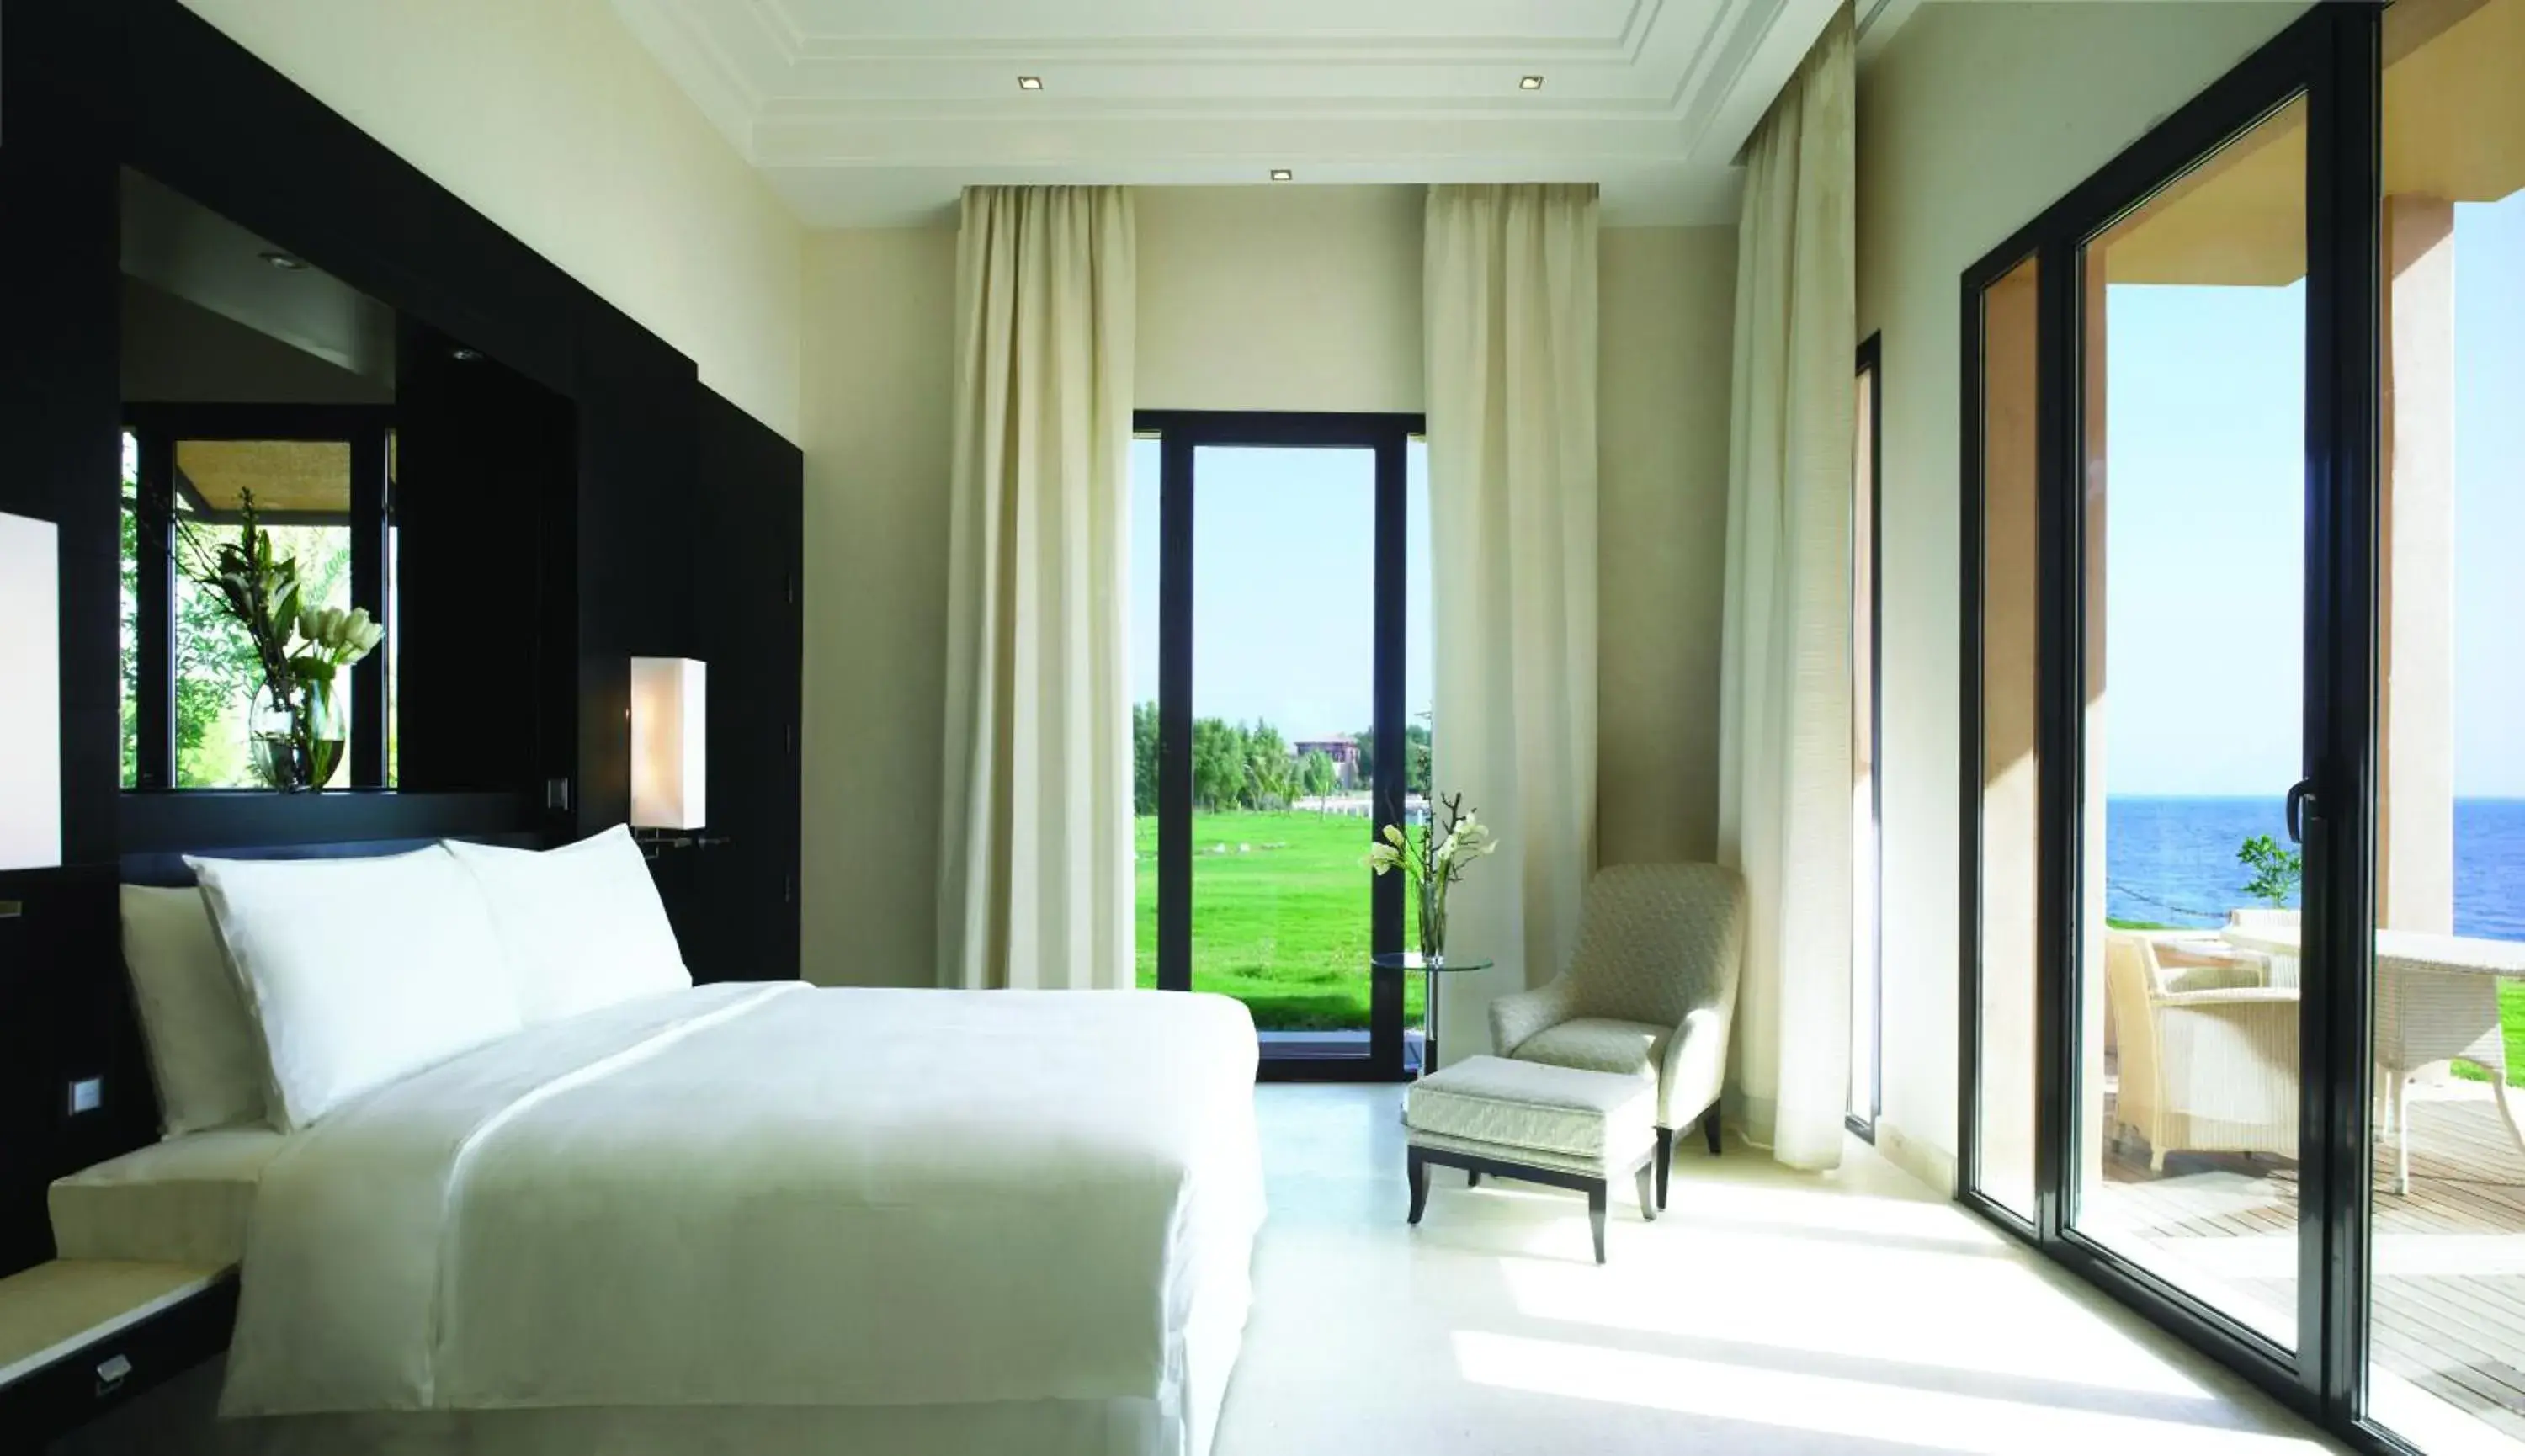 Bedroom in Park Hyatt Jeddah Marina Club and Spa